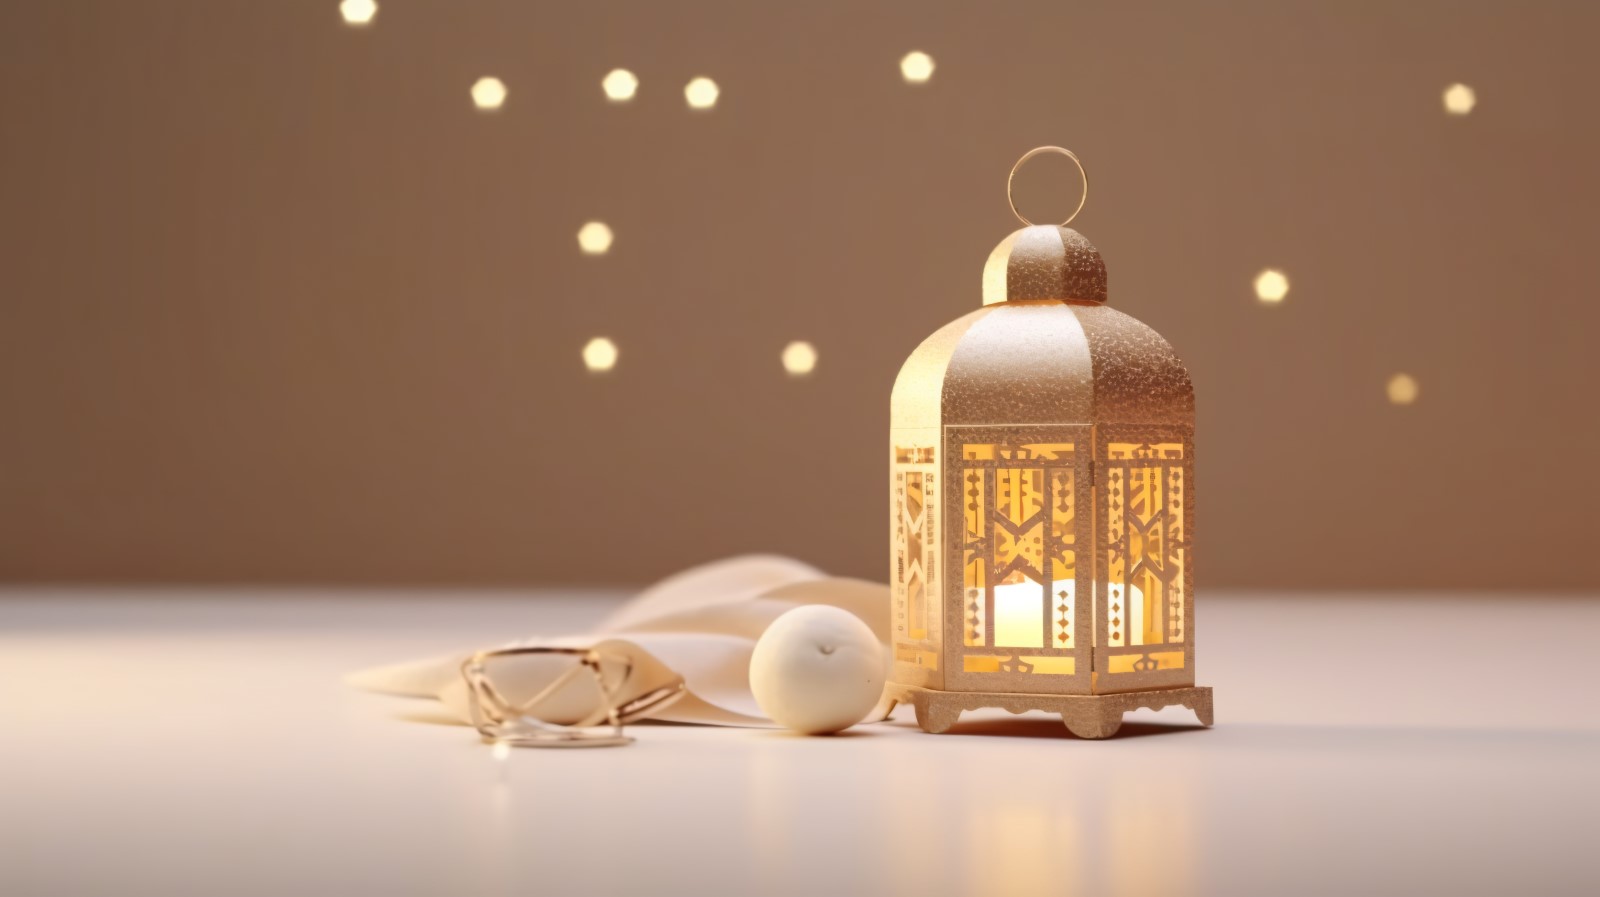 Eid ul adha Islamic background lantern 03